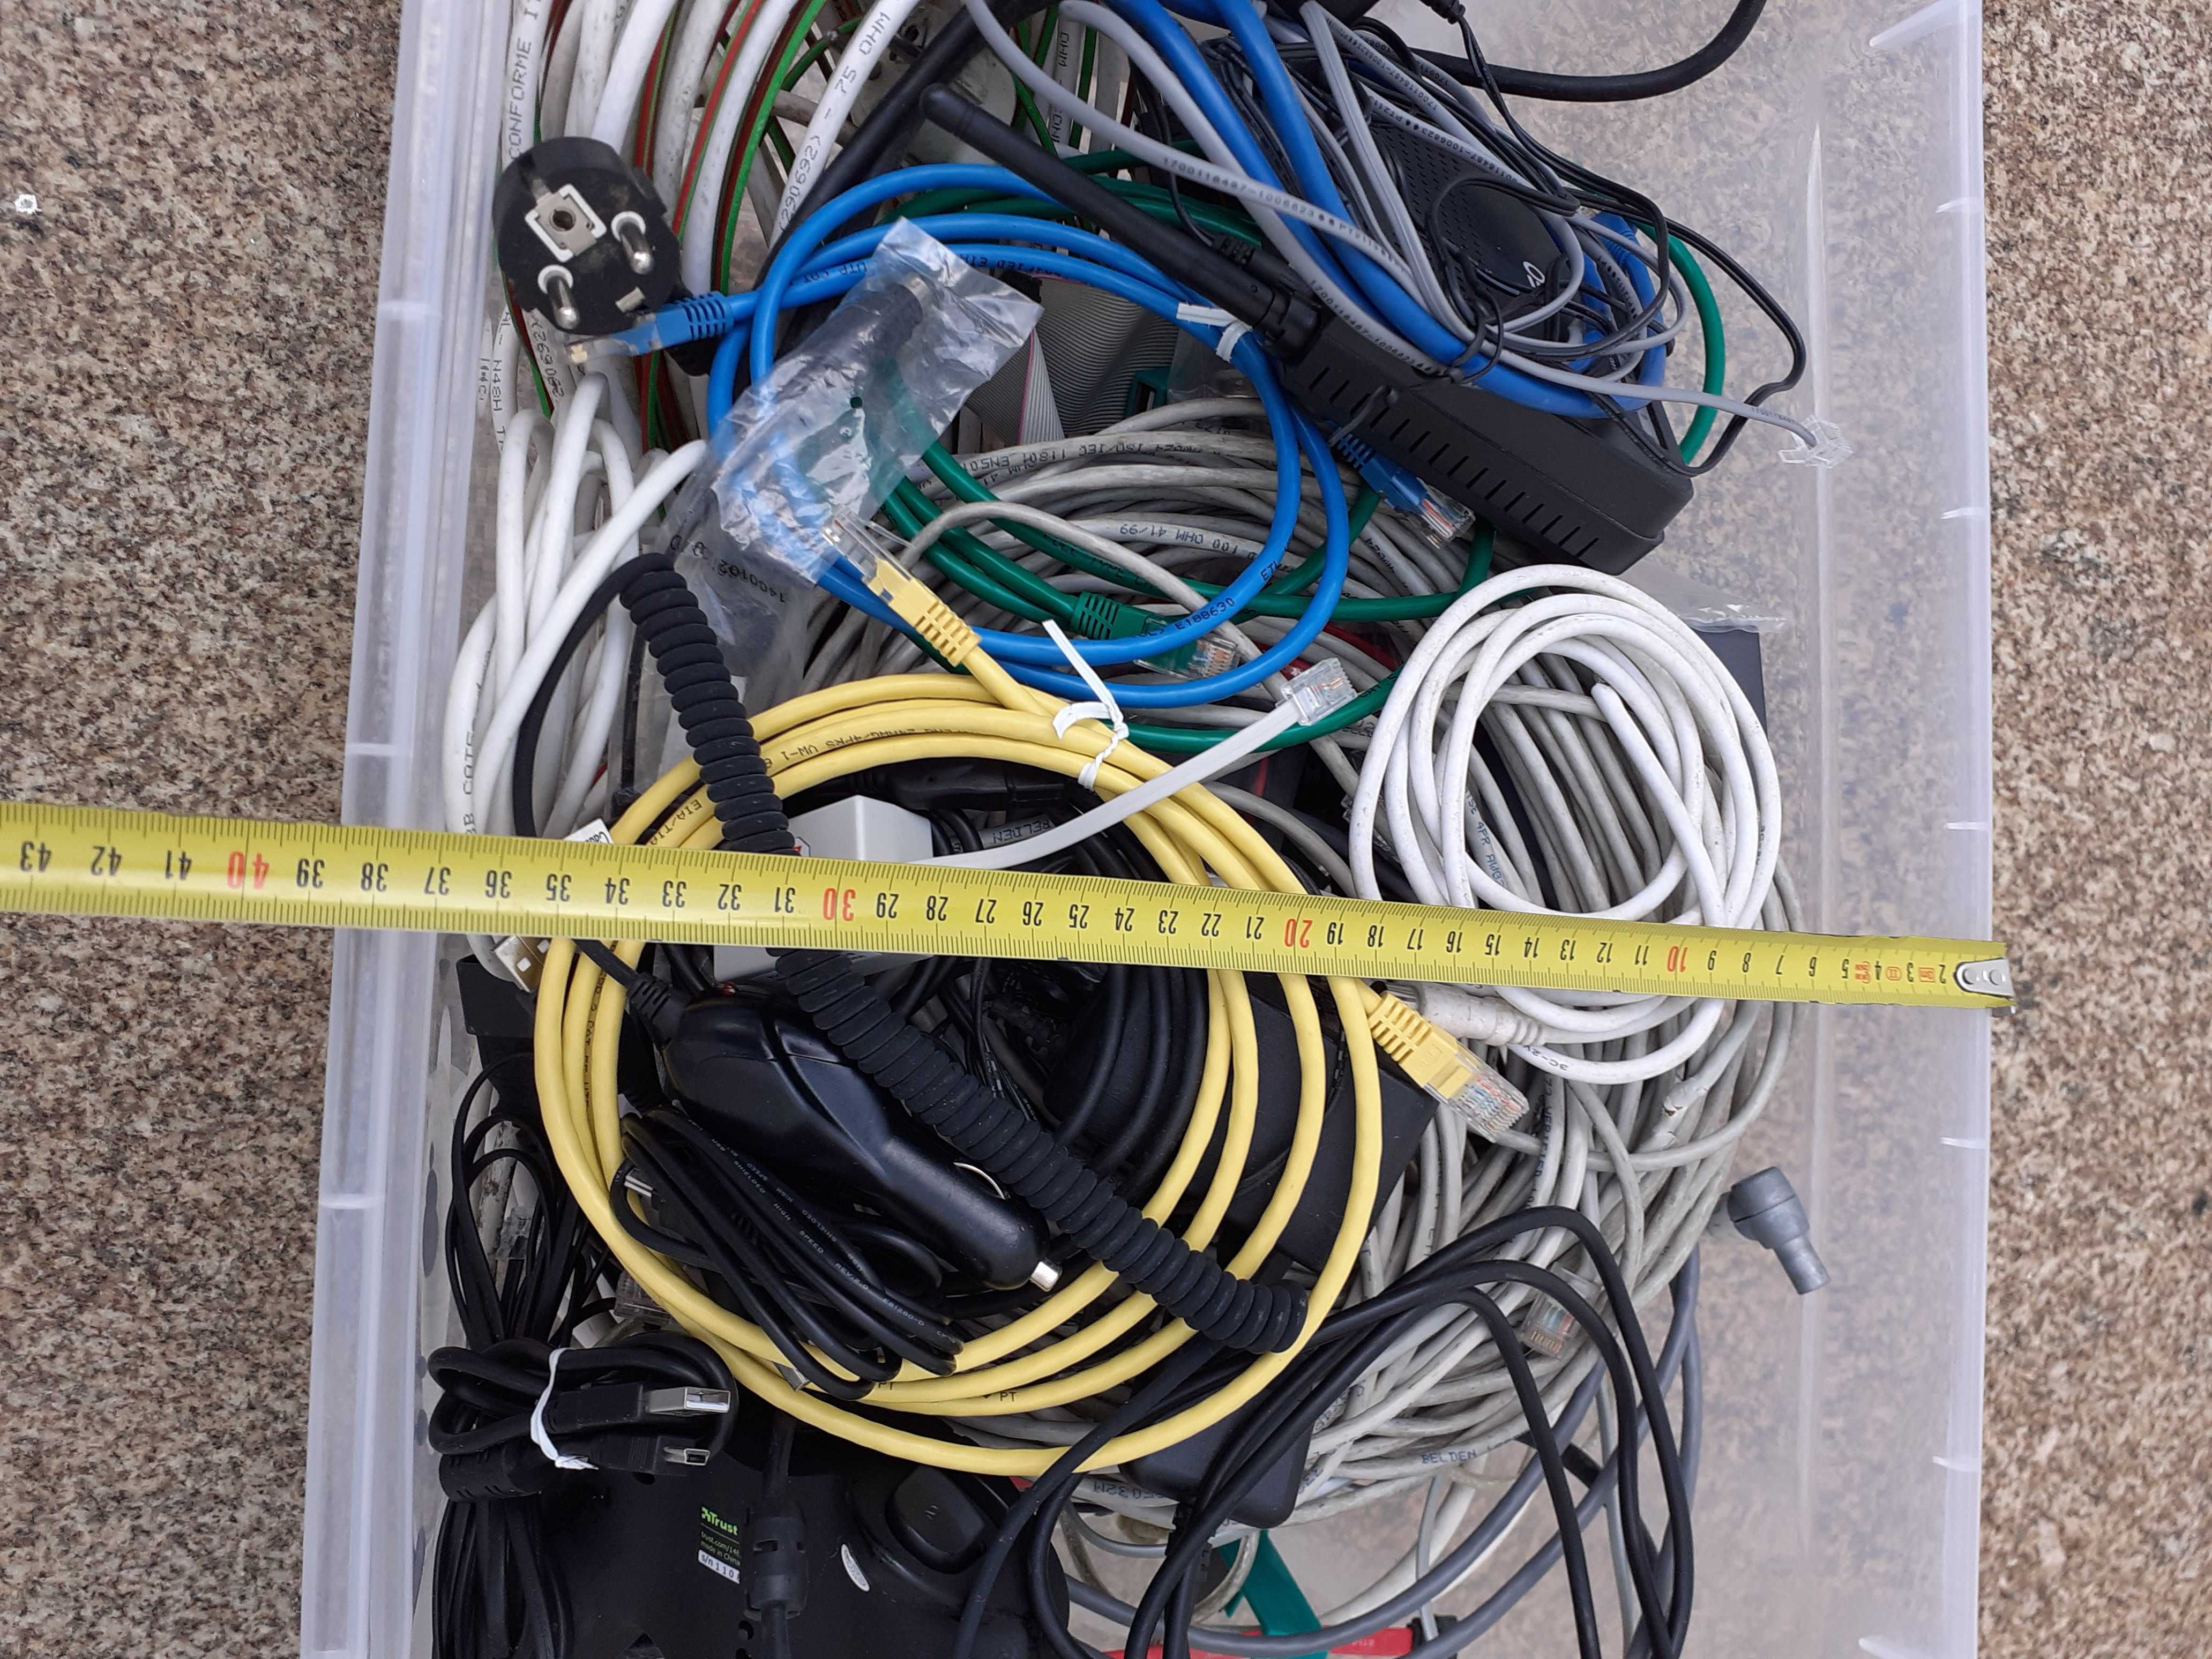 Caixa cheia com diferentes tipos de cabos